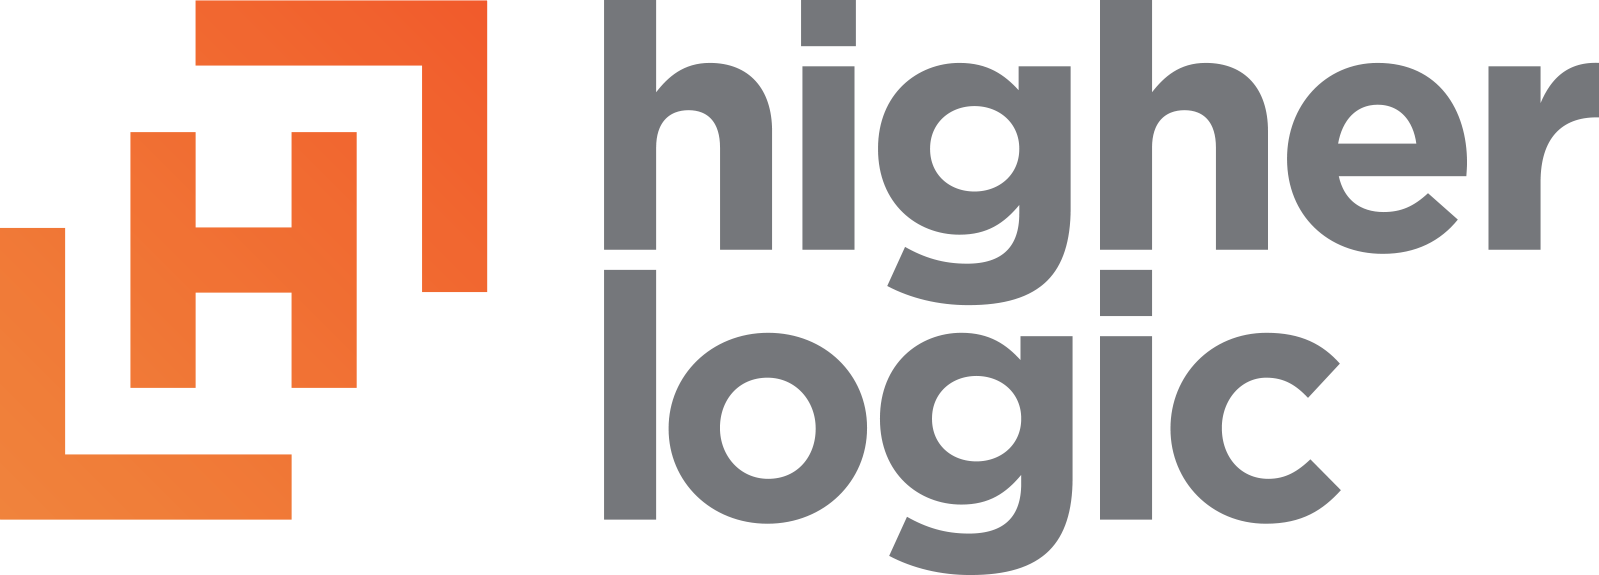 HigherLogic_logo_stacked.png